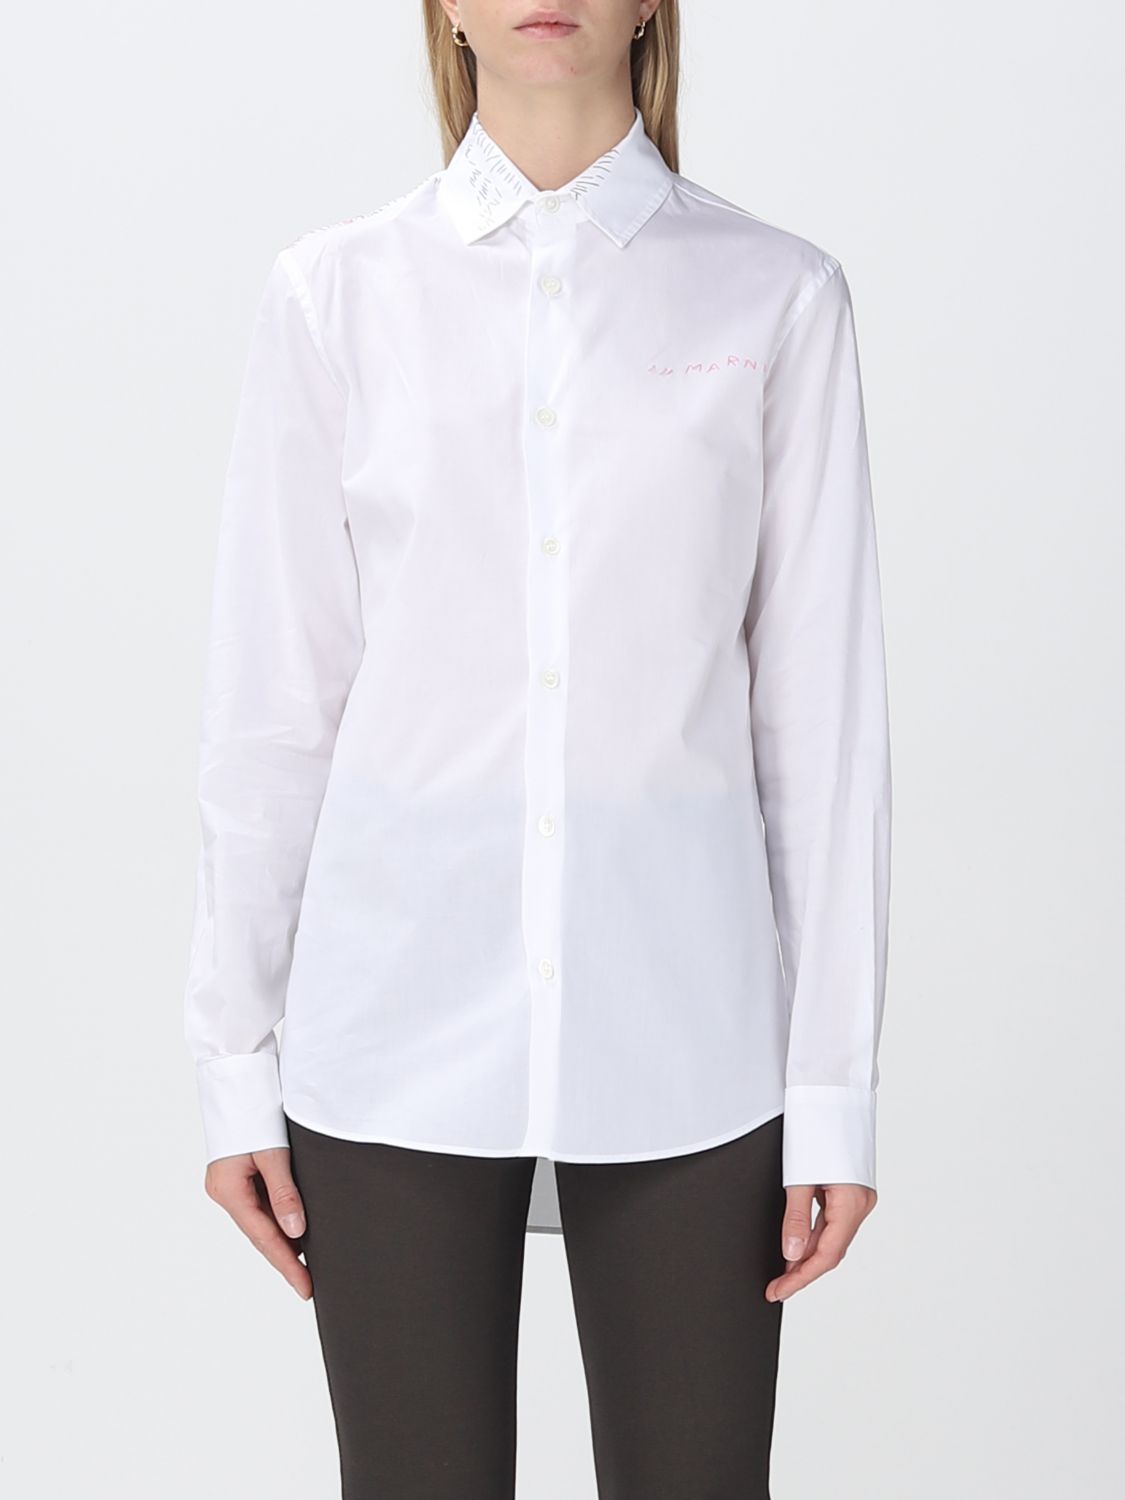 MARNI: shirt for woman - White | Marni shirt CAMA0403S1UTC193 online on  